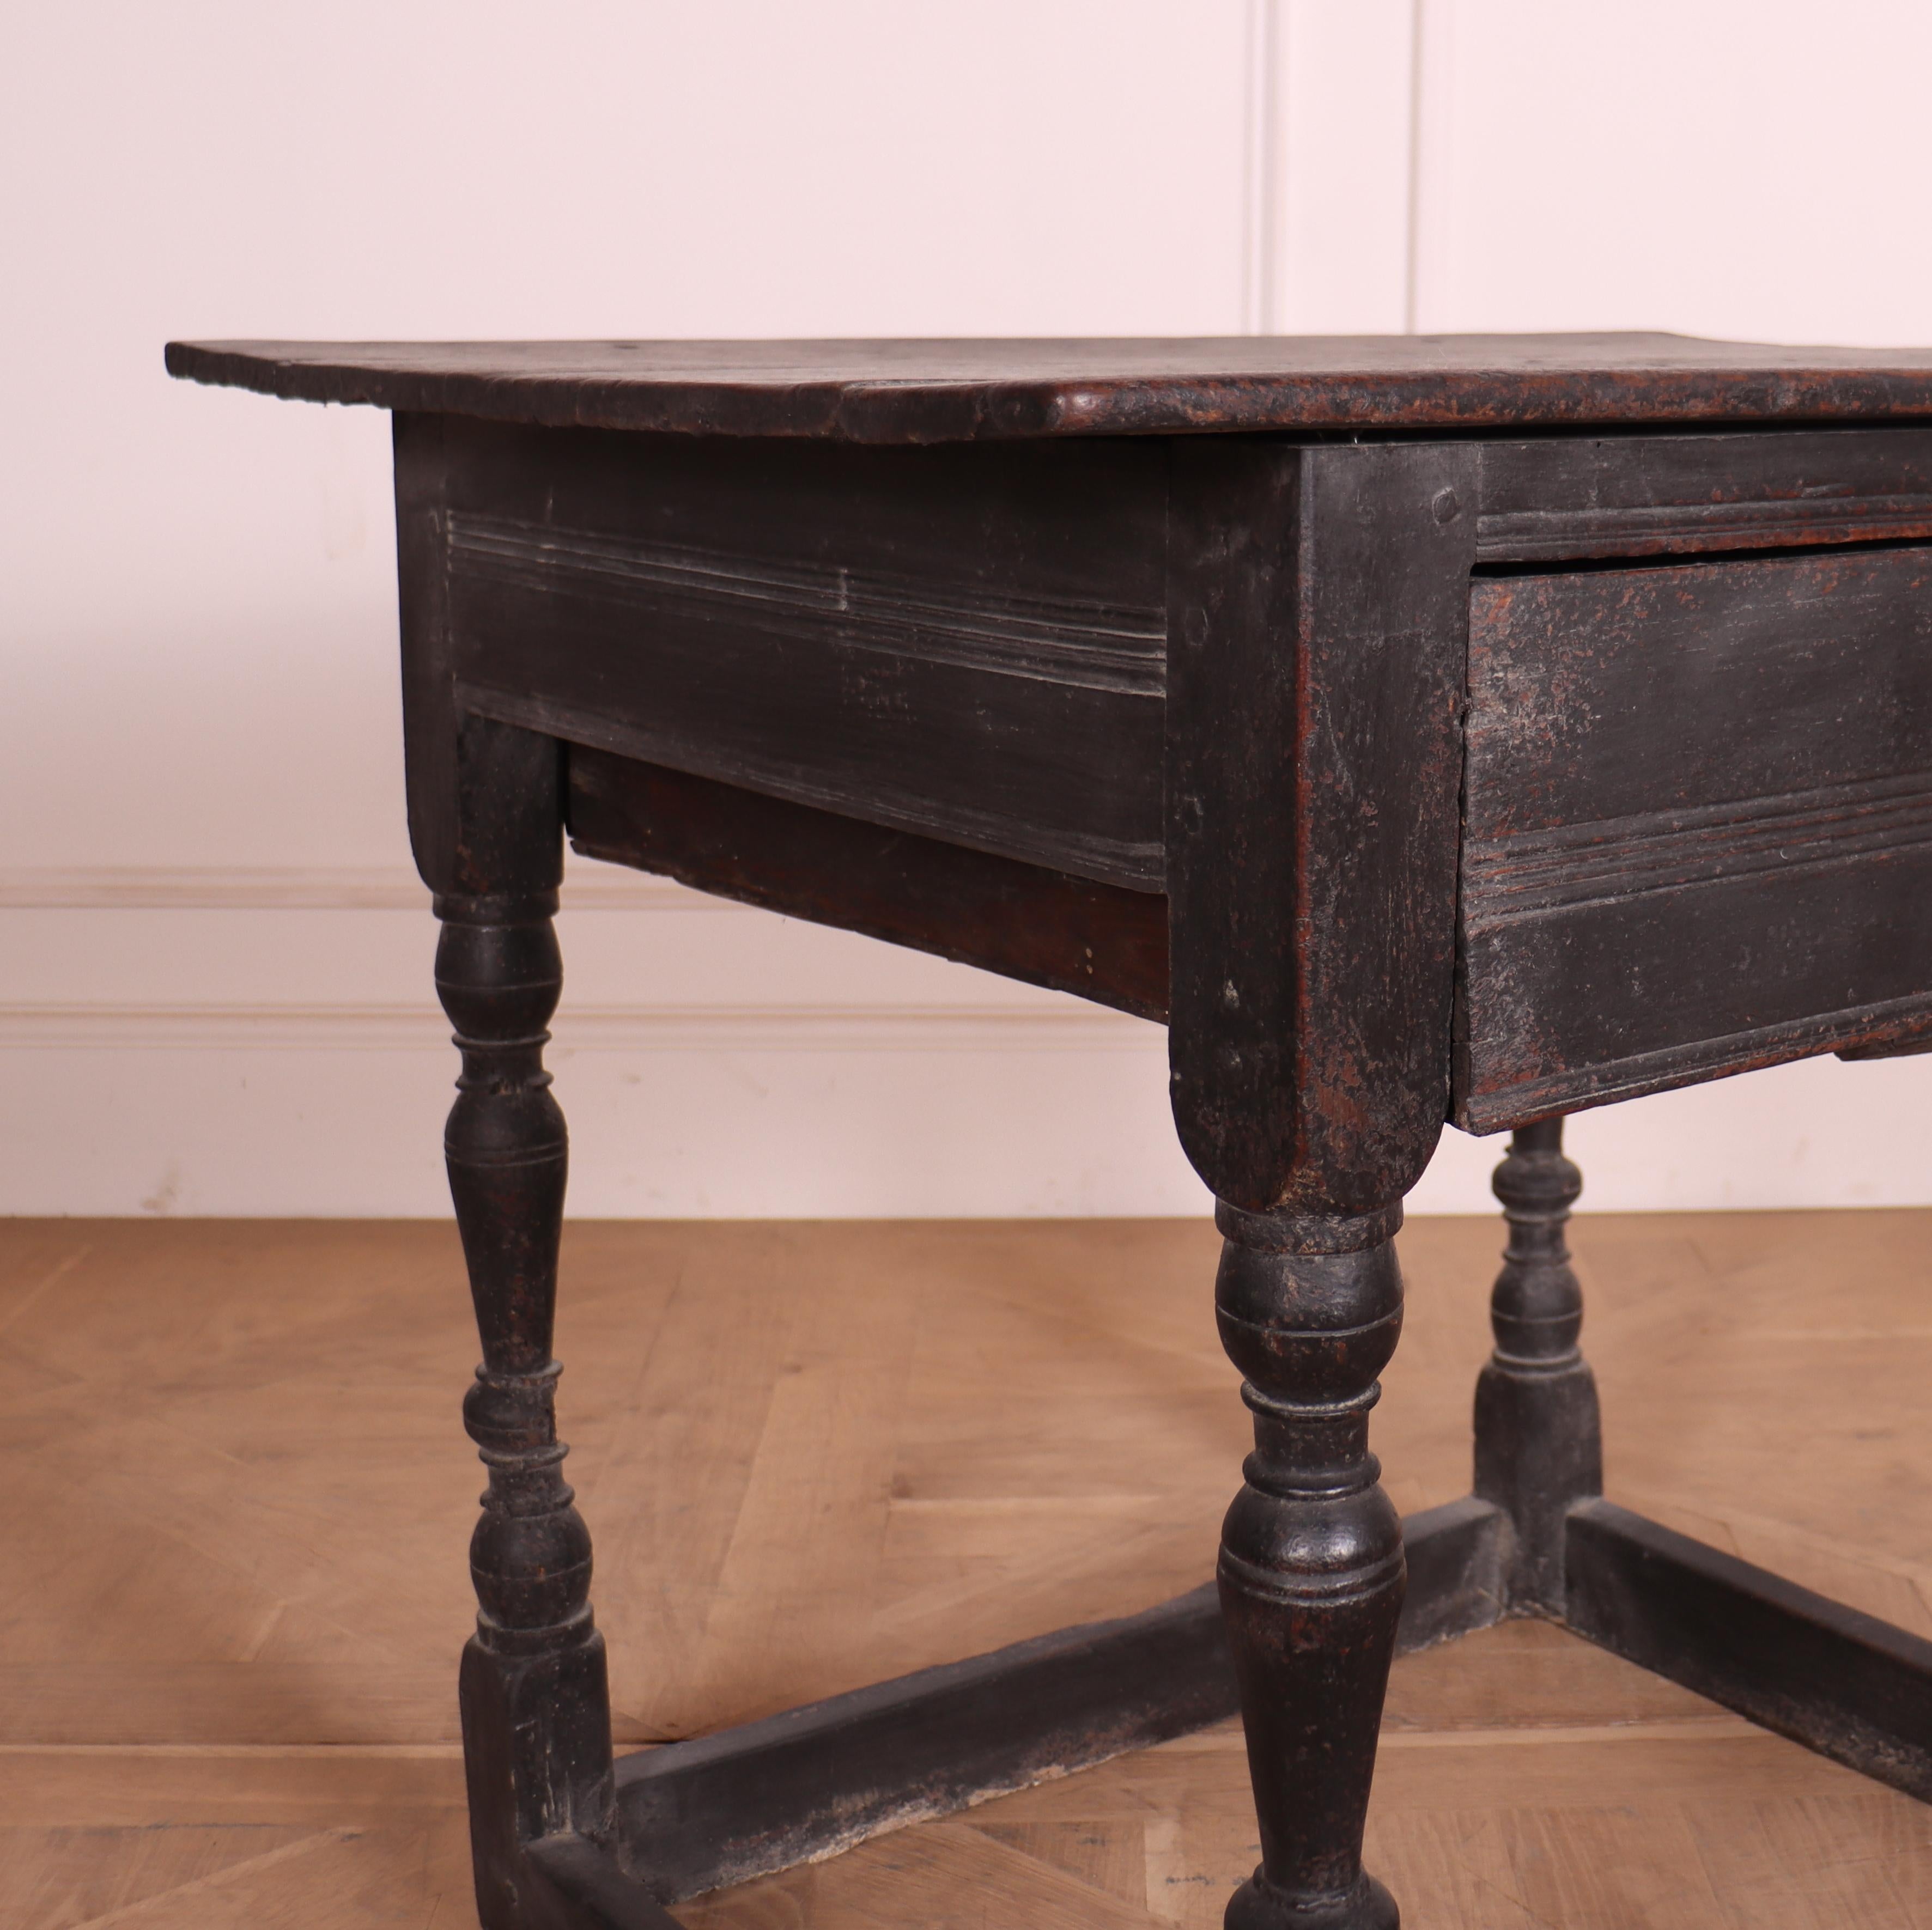 A.C.I.C., table à lampe à un tiroir en chêne peint du 18e siècle. 1780.

Référence : 7793

Dimensions
81 cm (32 pouces) de large
26 pouces (66 cm) de profondeur
28 pouces (71 cms) de hauteur